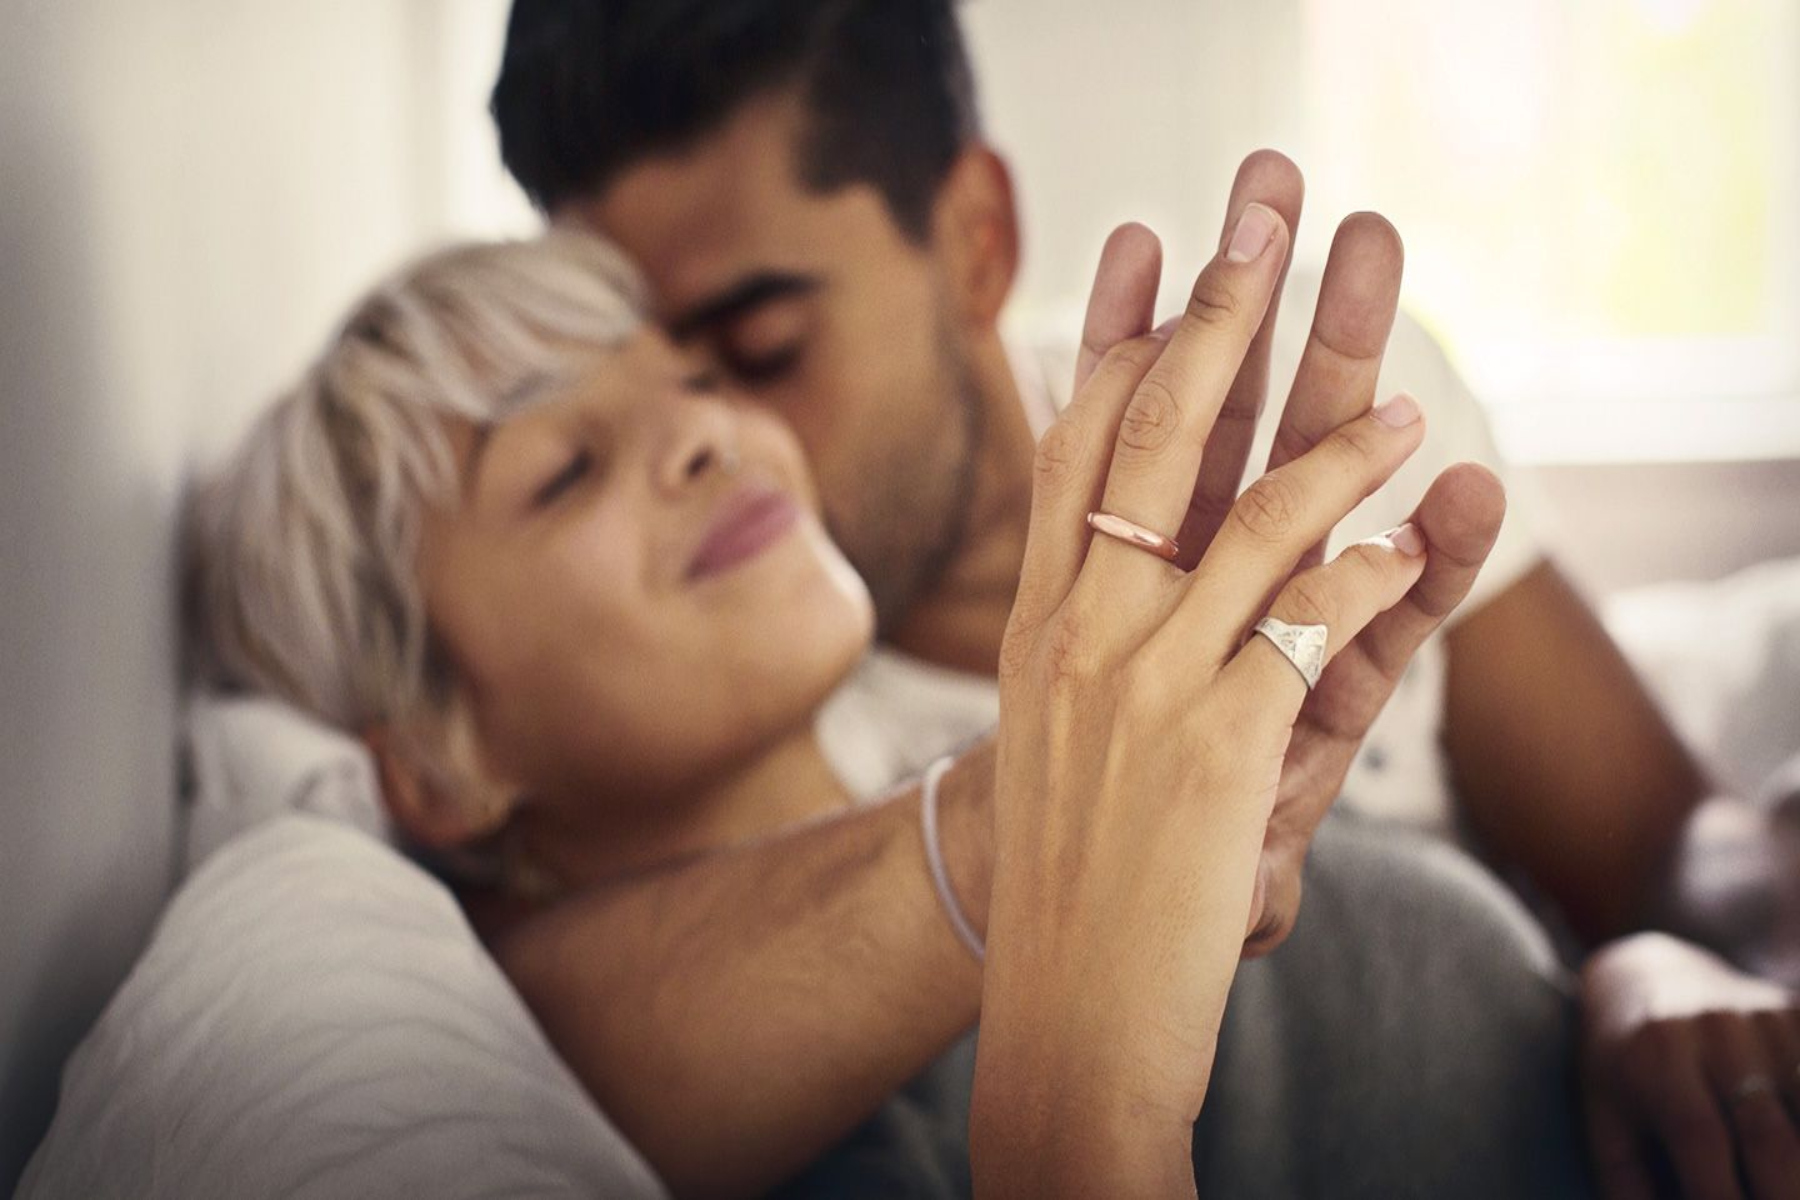 Στάσεις σεξ: Ποιες είναι οι πιο δύσκολες στάσεις σεξ που δίνουν την μεγαλύτερη ευχαρίστηση;